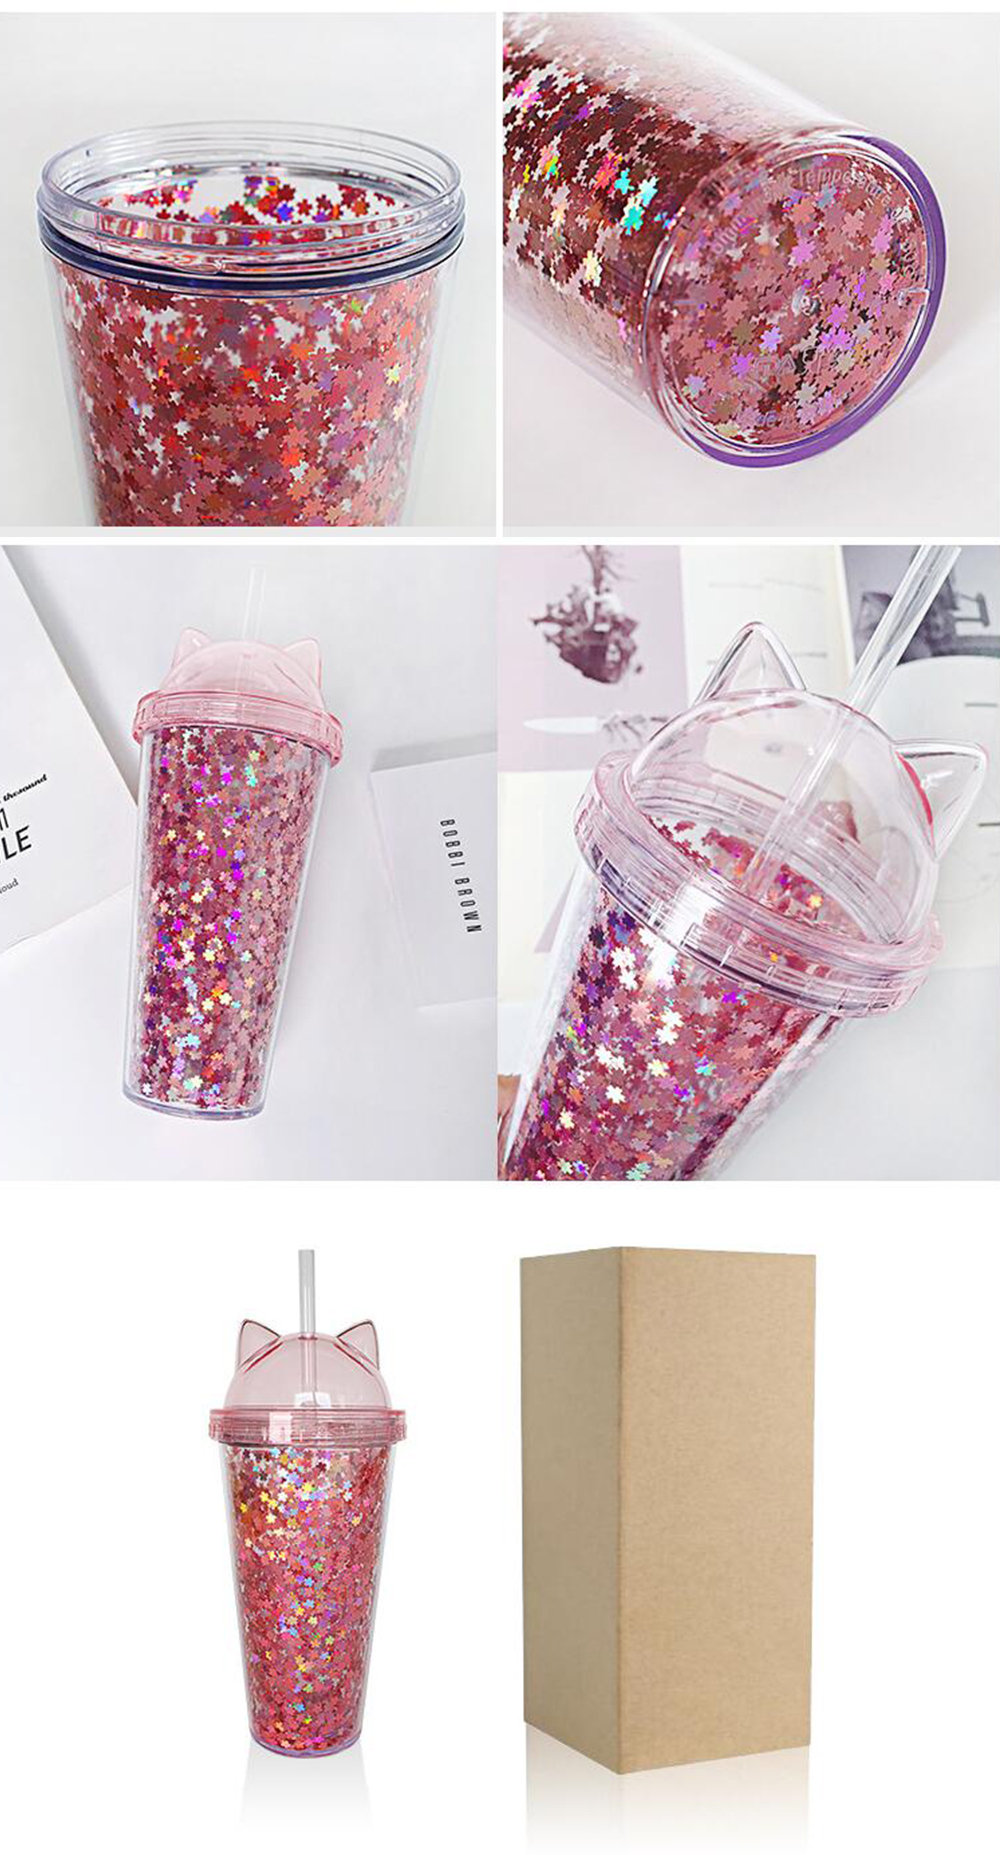 Kawaii Cute Cat Ear Tumbler Cup Water Bottle W Straw & Lid L Pink Glitter  !nside